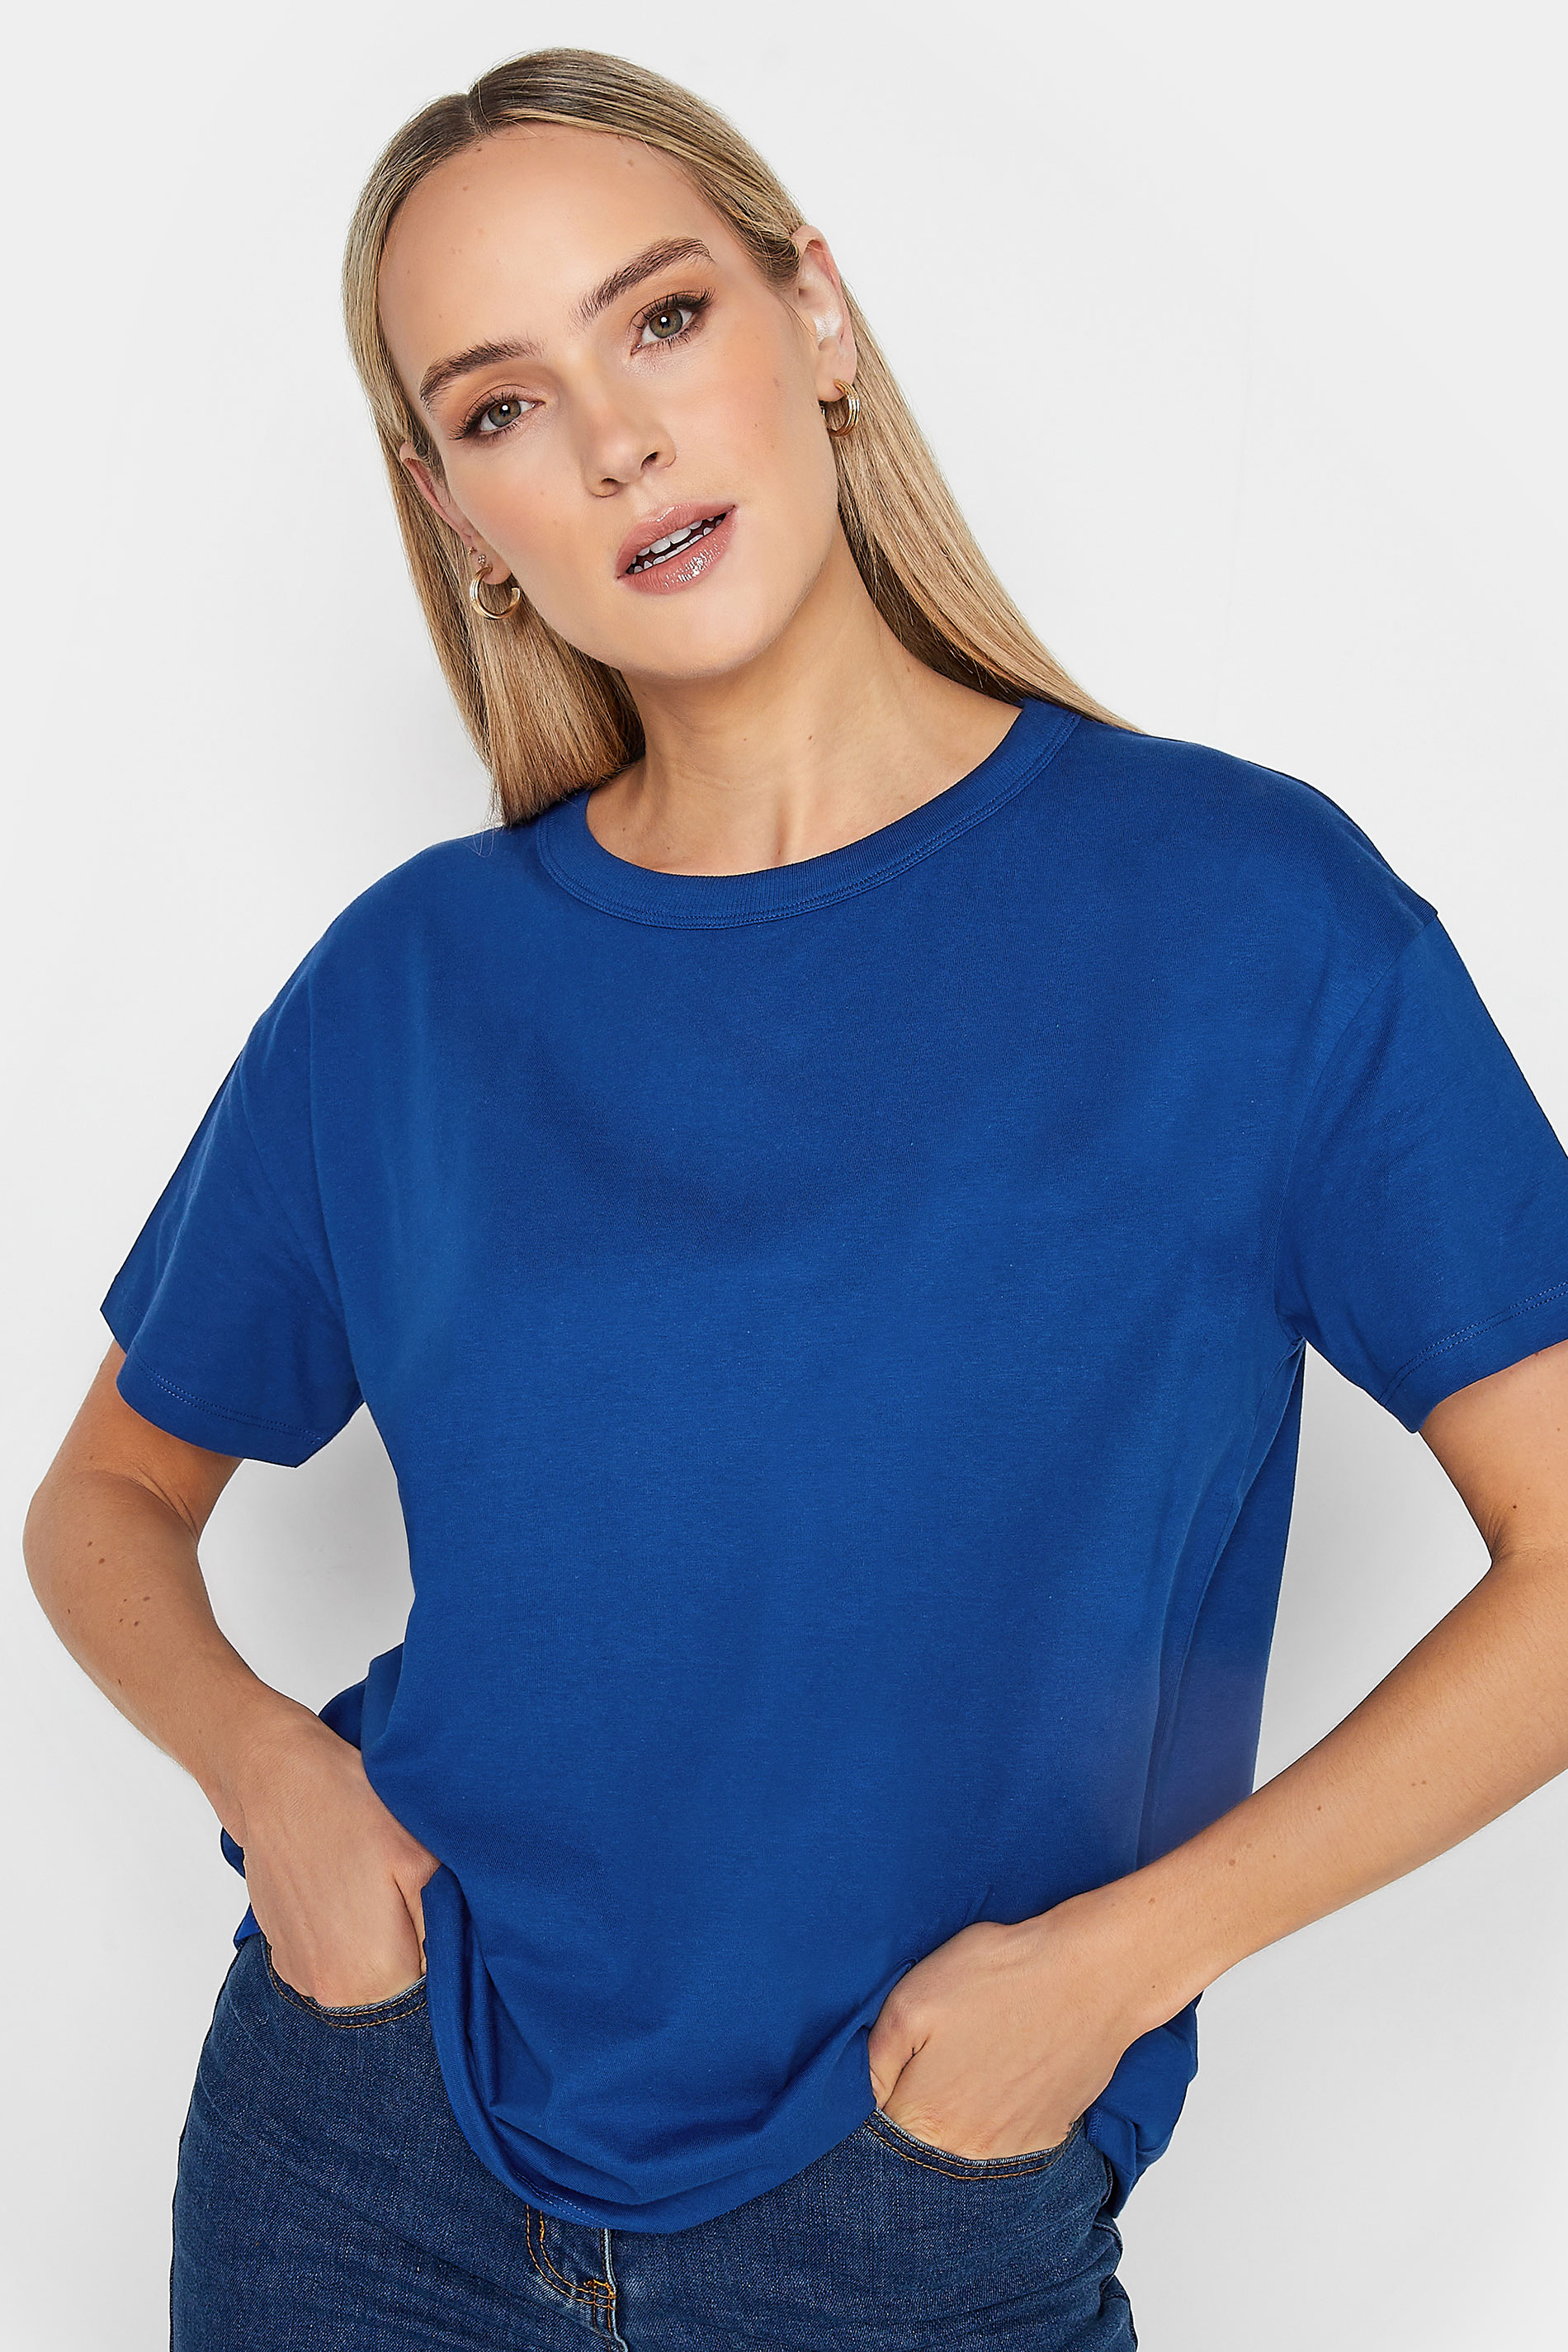 LTS Tall Cobalt Blue Short Sleeve T-Shirt | Long Tall Sally  1